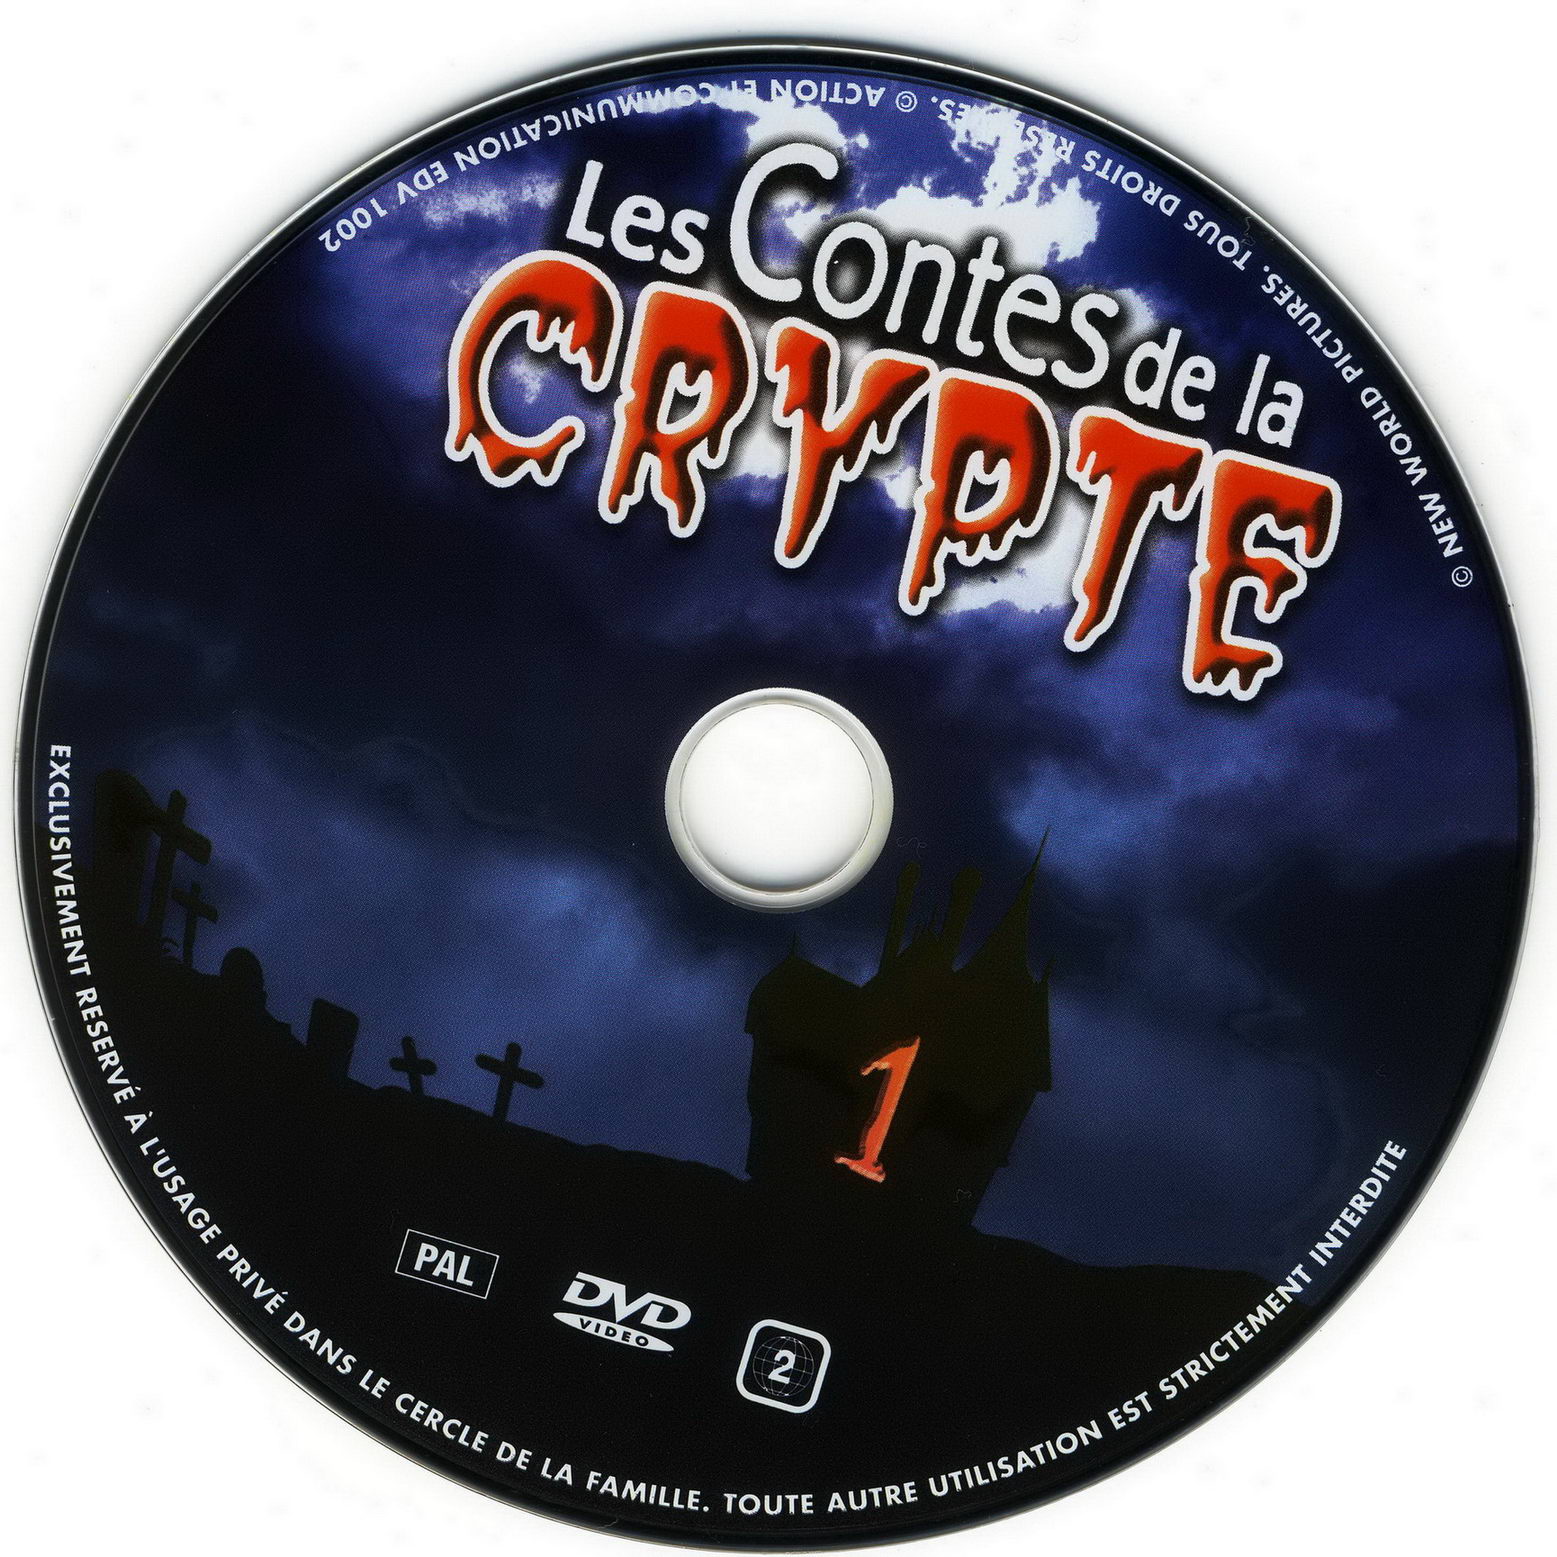 Les contes de la crypte vol 01 v2